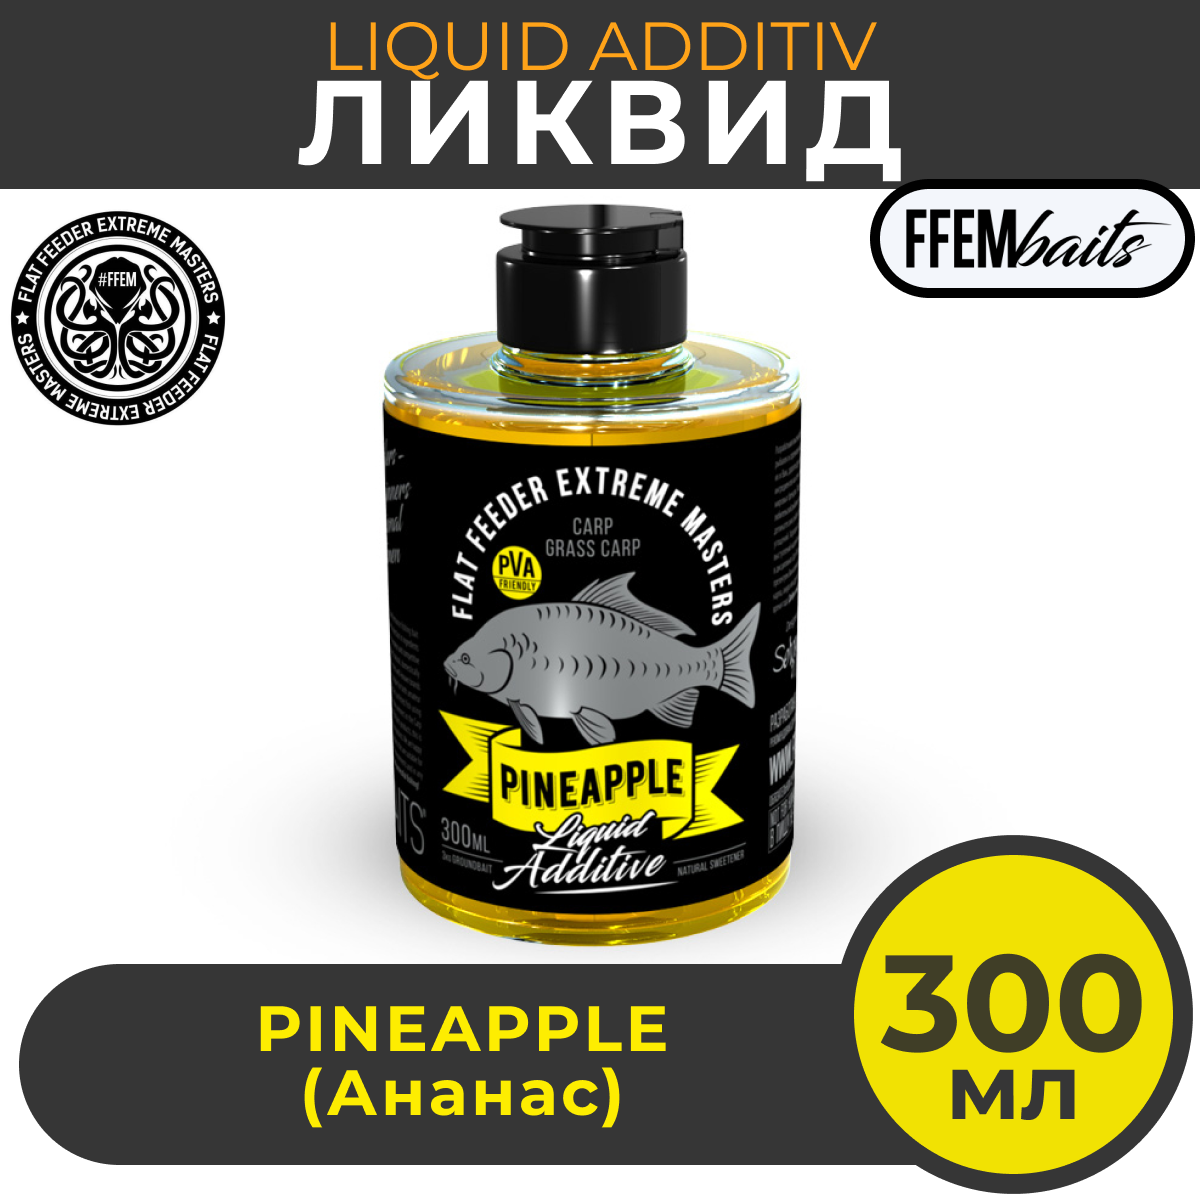 Ликвид FFEM Liquid Additive Pineapple (ананас) 300мл / активатор клёва / жидкое питание / ликвид / бустер